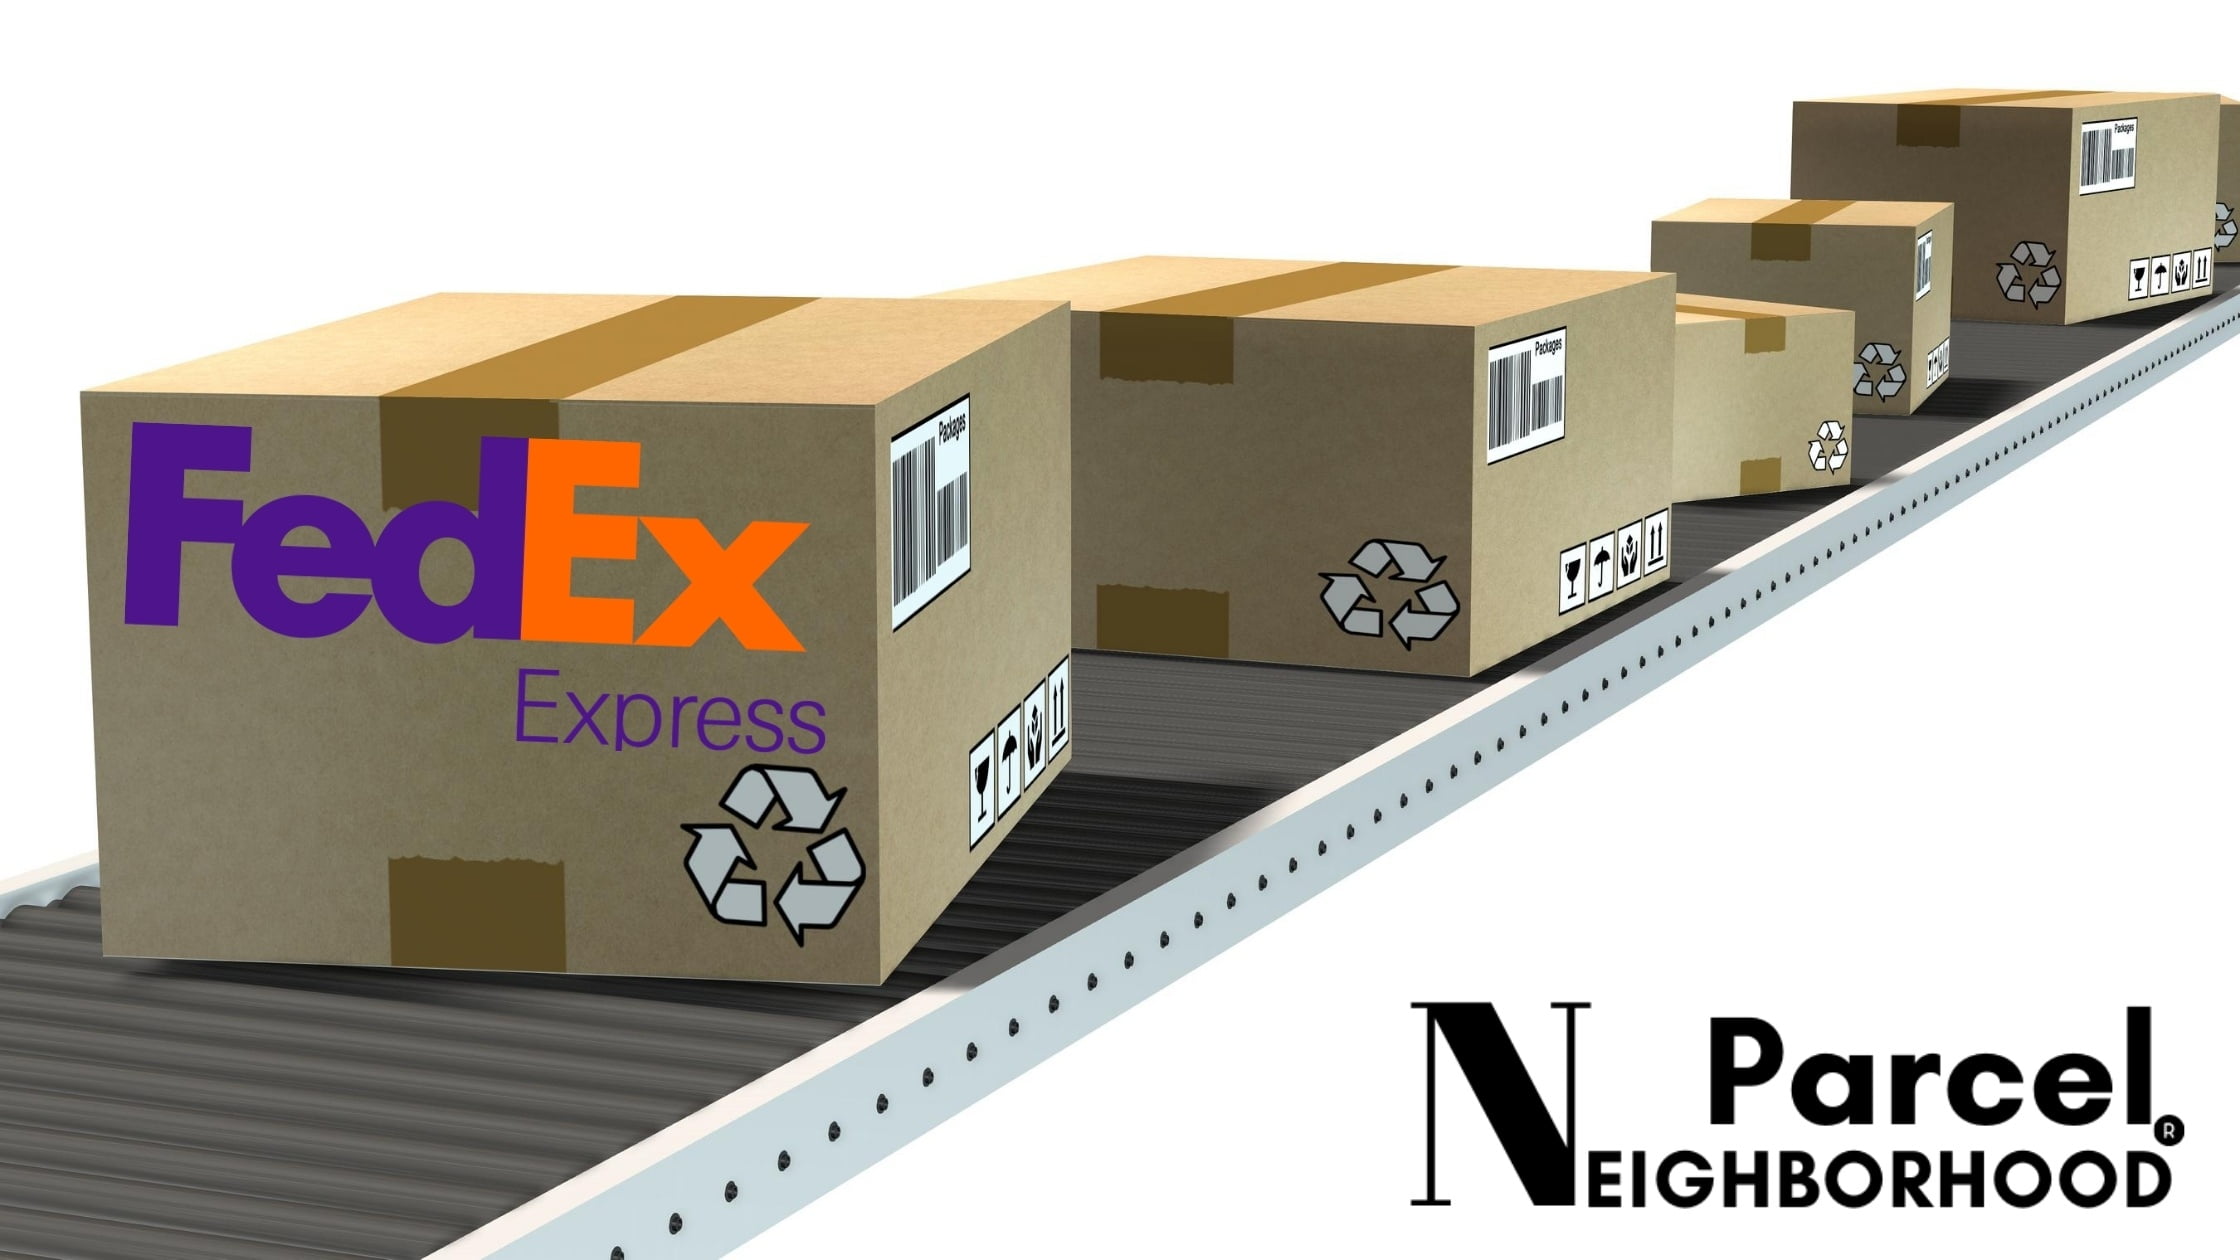 FedEx Office Location In Tewksbury - FedEx Shipping Center Near Me